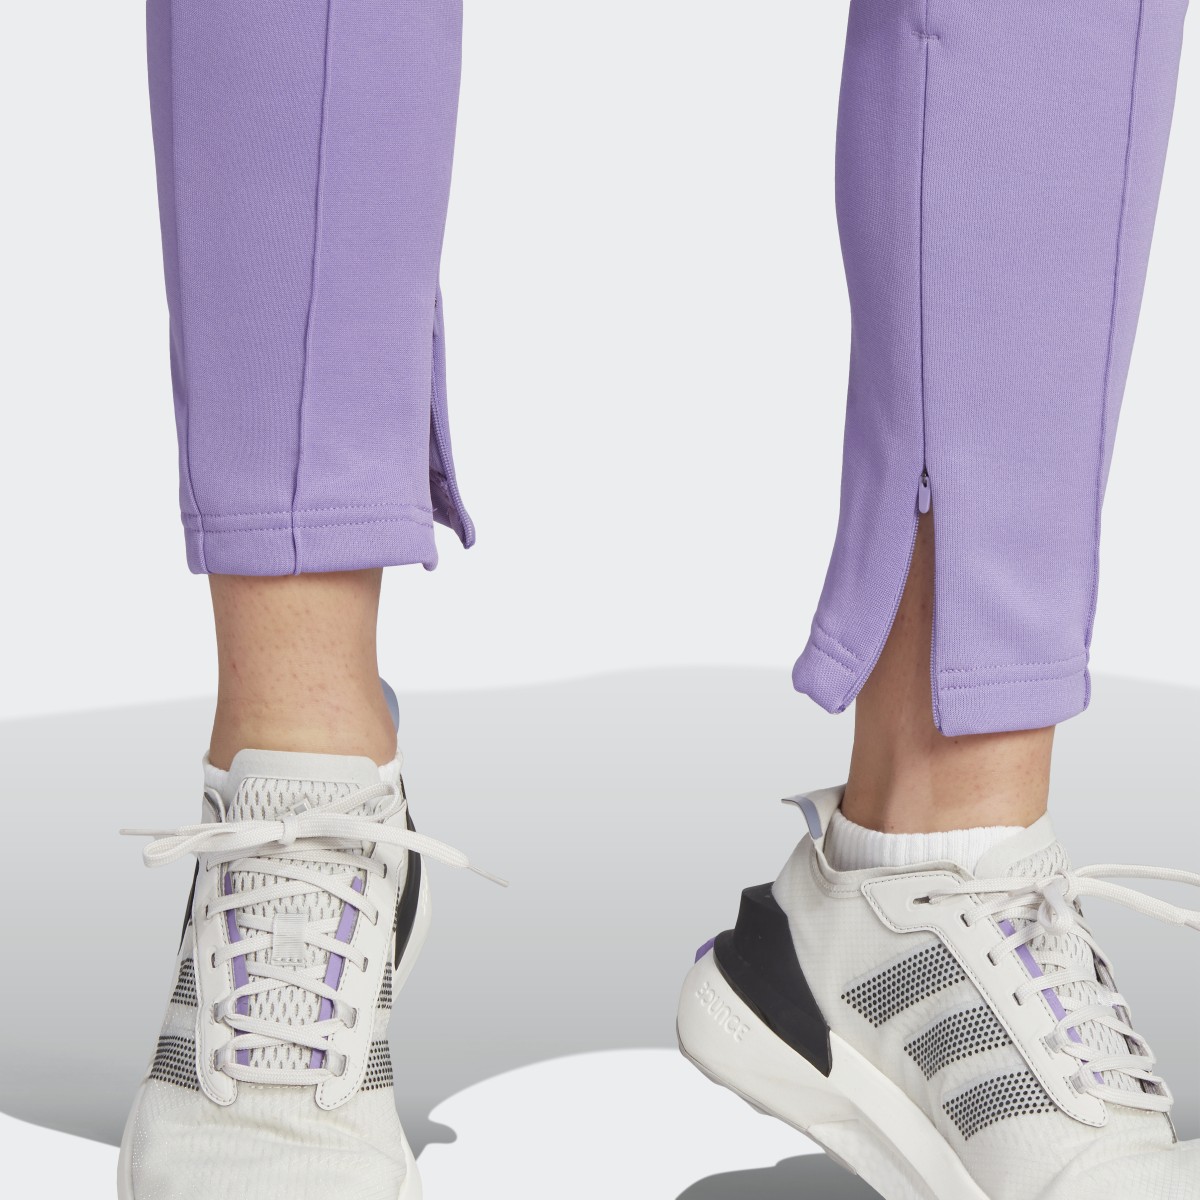 Adidas Tiro Suit Up Lifestyle Track Pant. 6